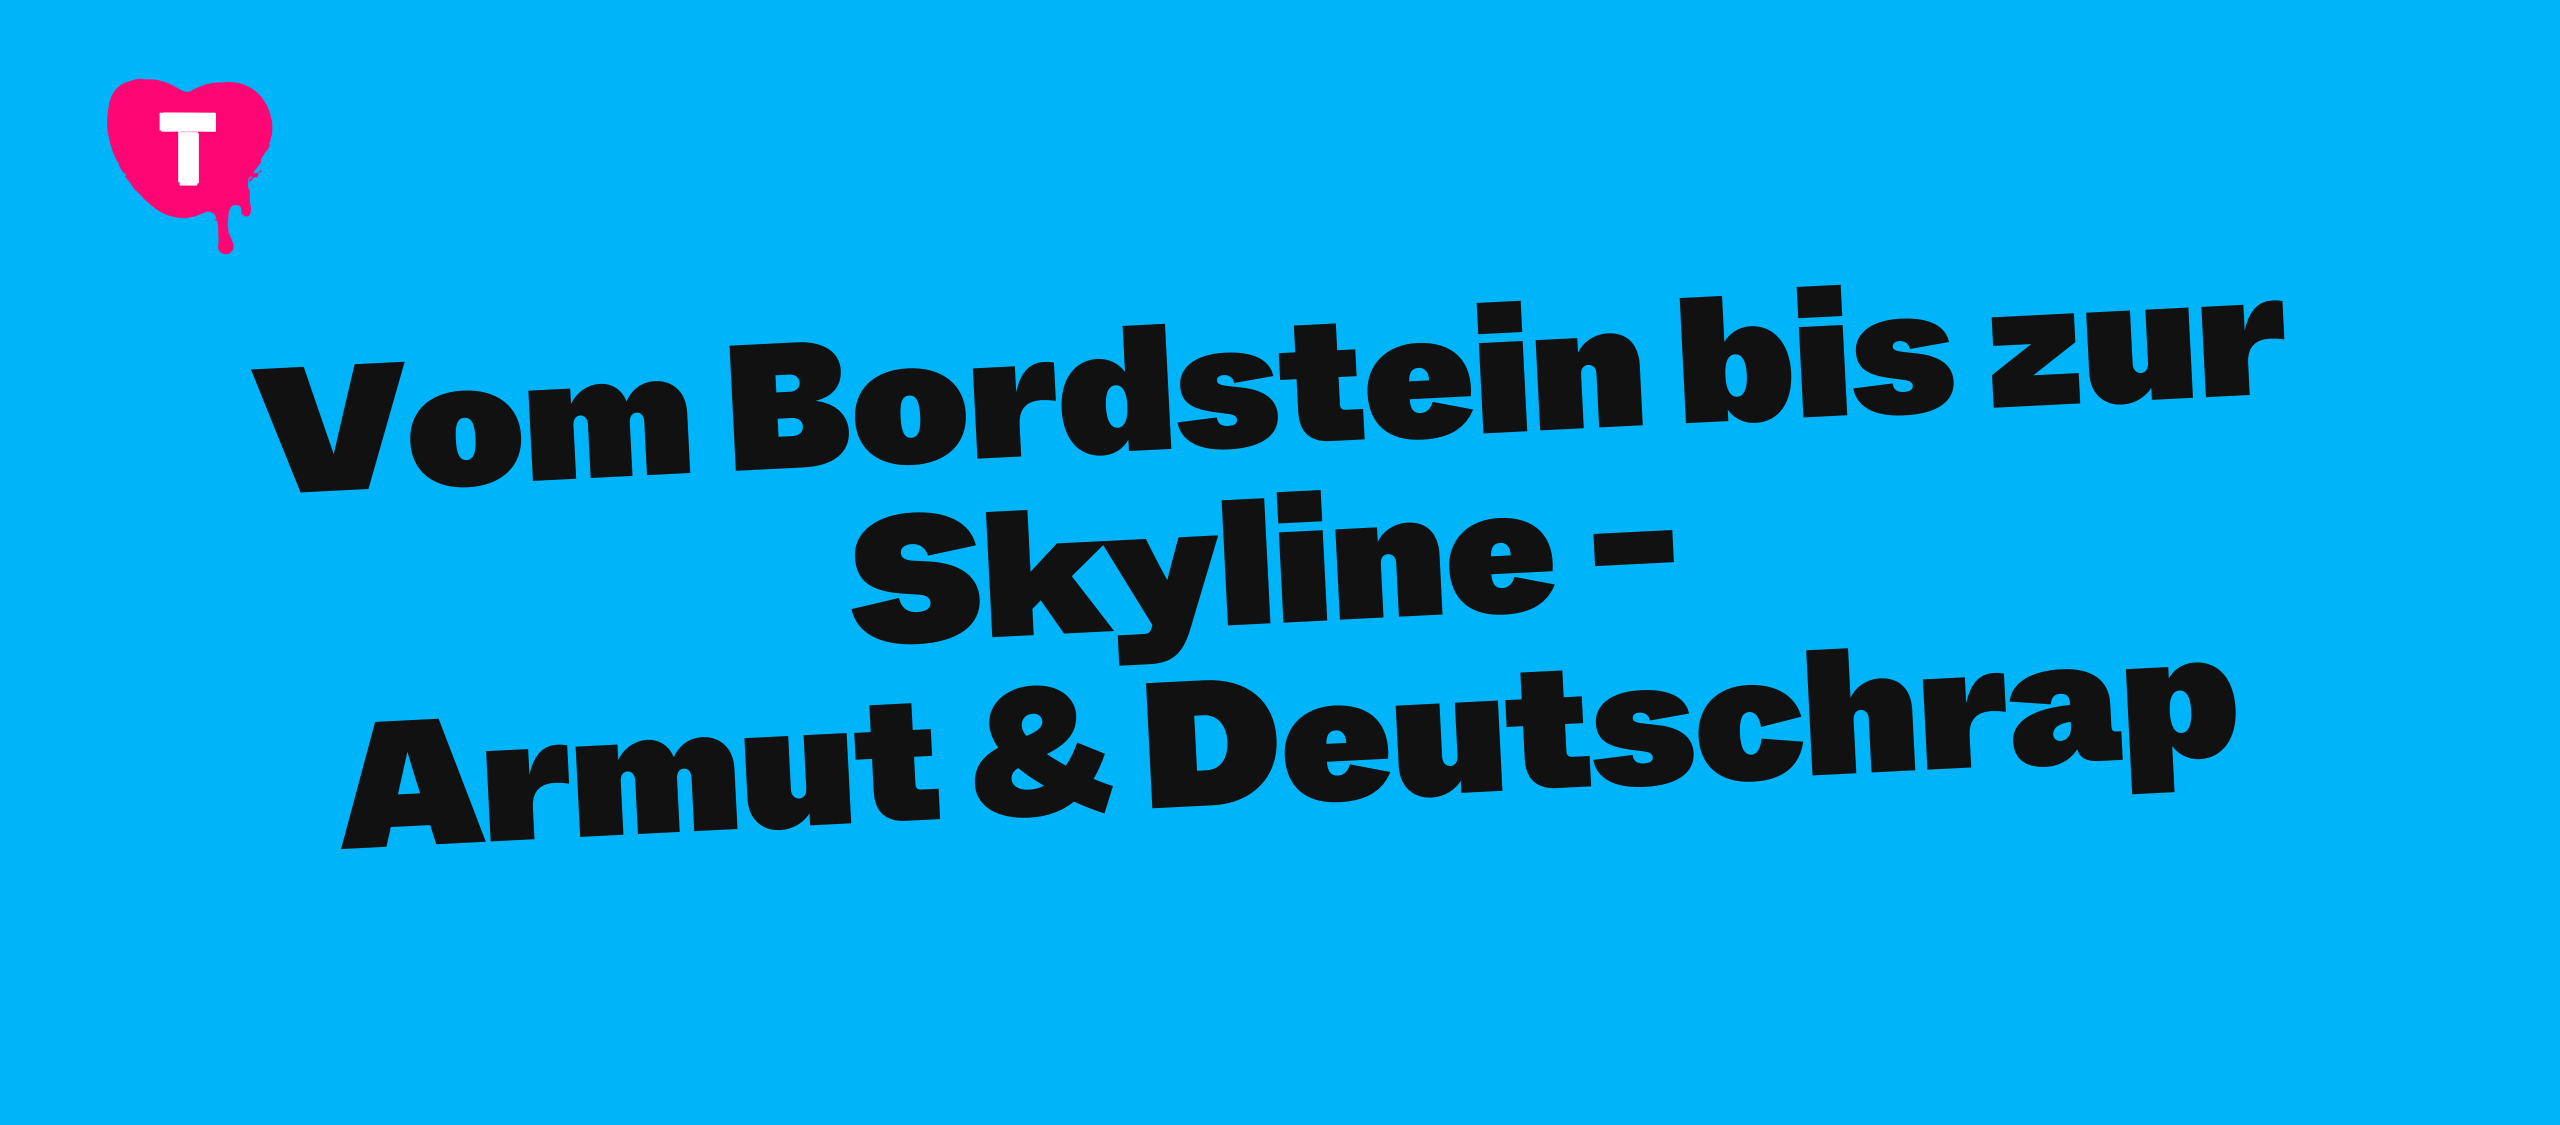 Vom Bordstein bis zur Skyline - Armut & Deutschrap